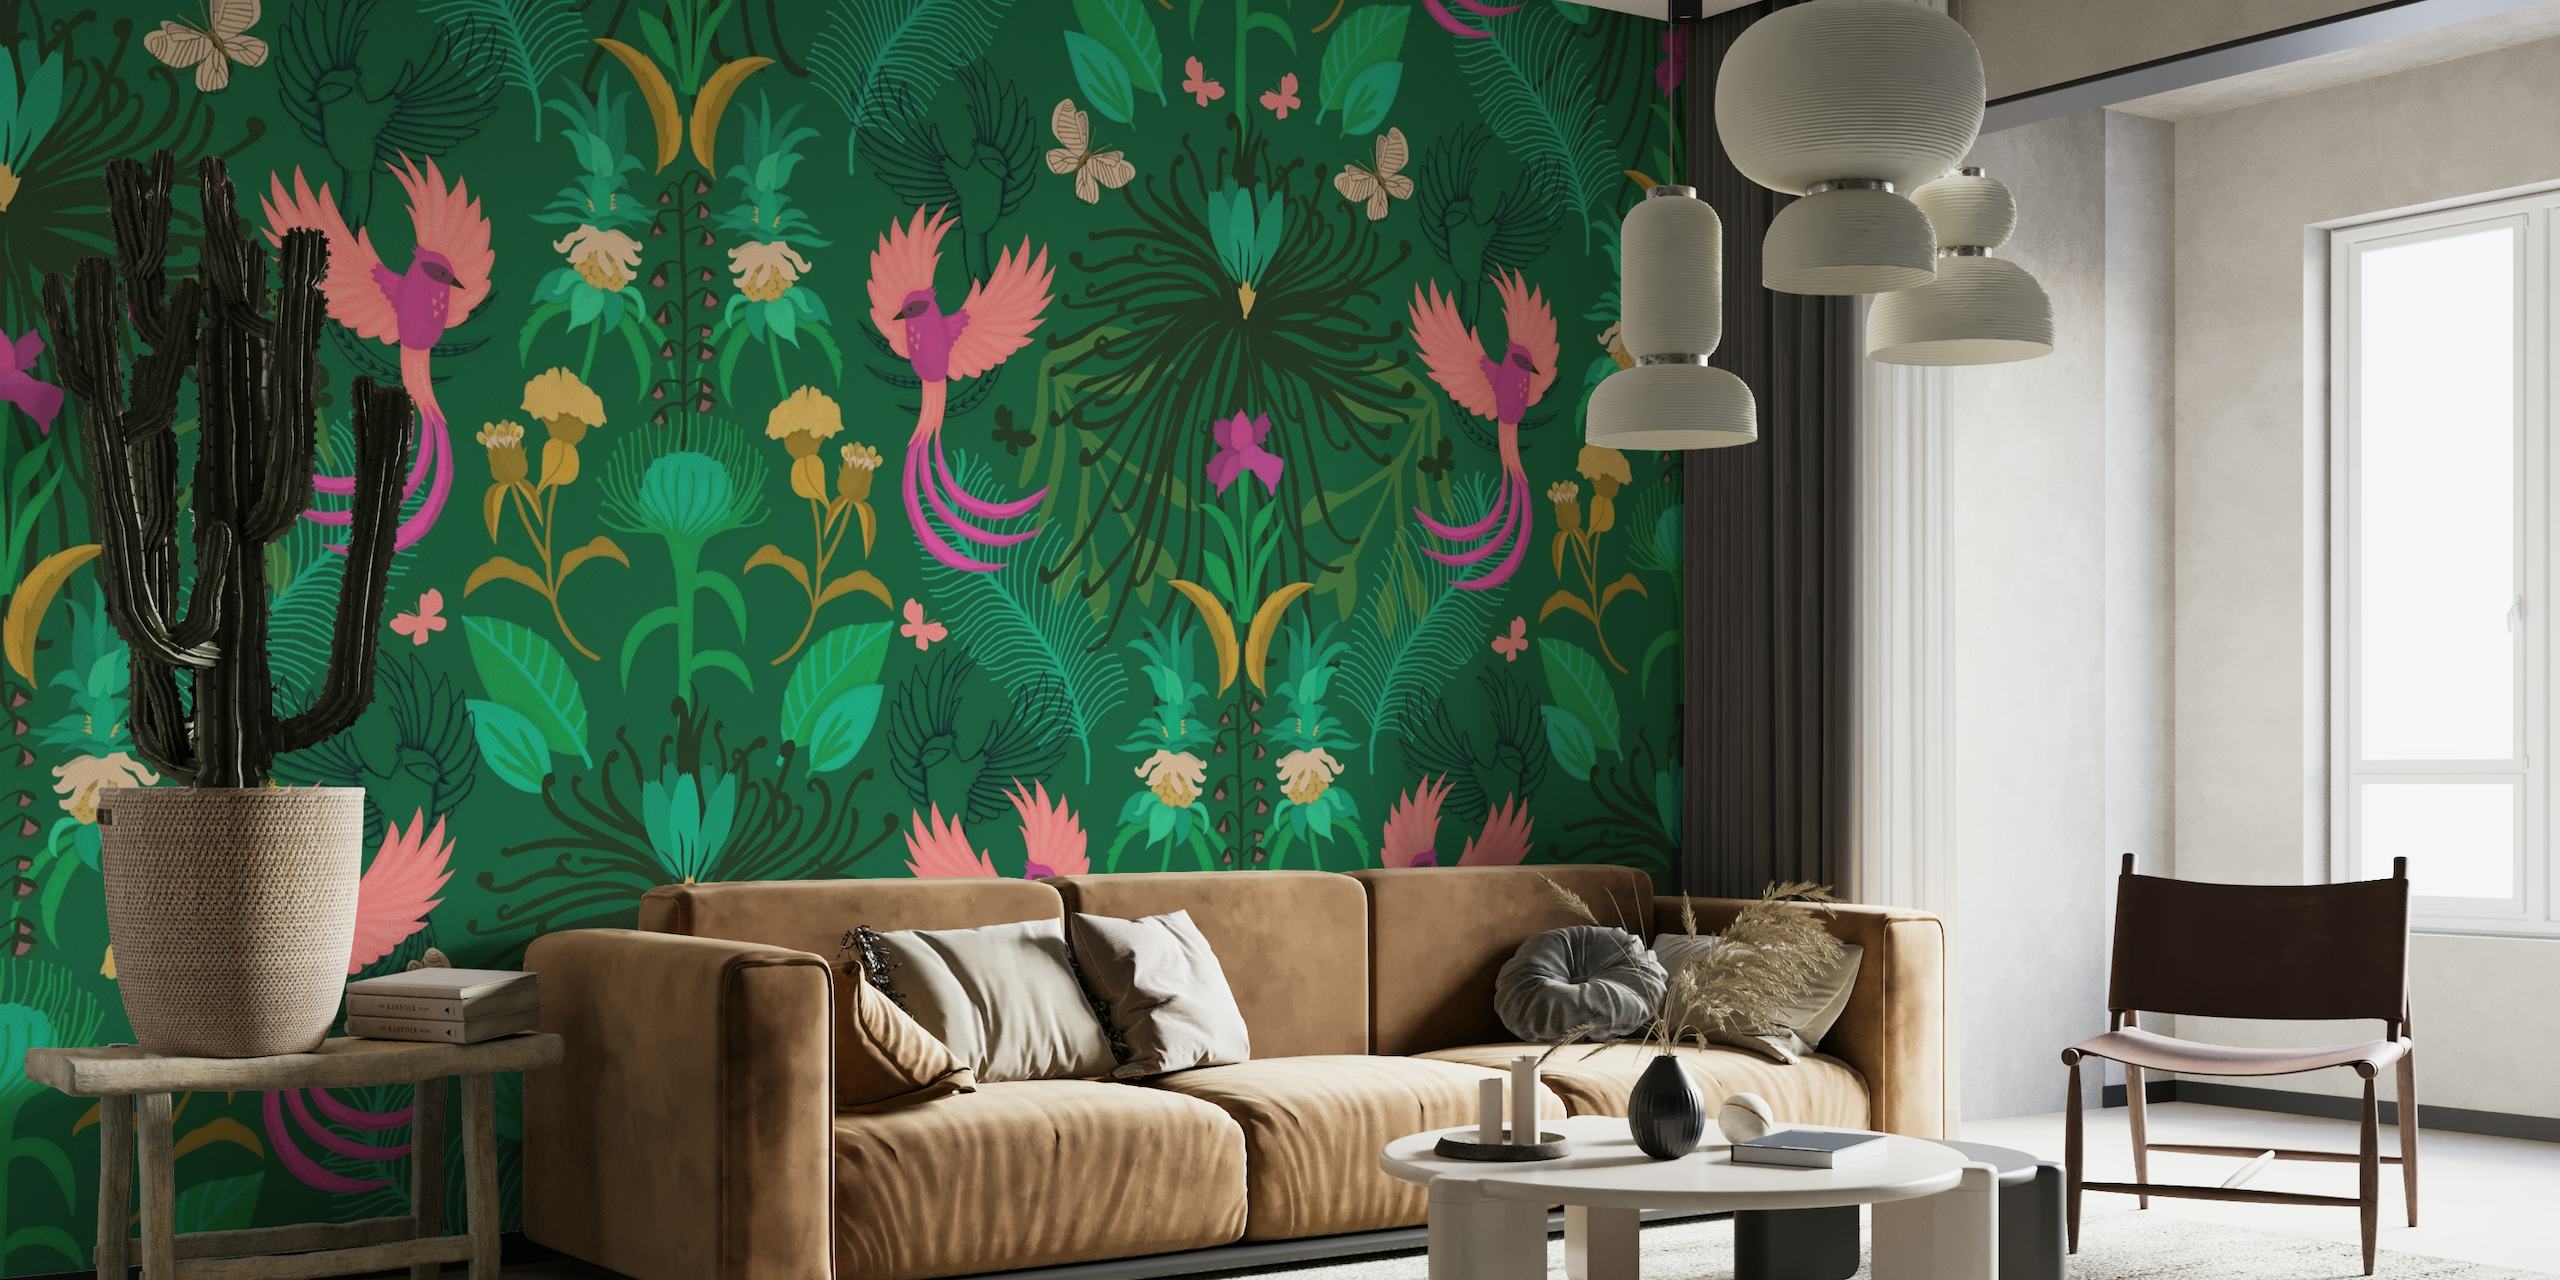 Farbenfrohes Wandbild eines geheimen Gartens mit lebhaften exotischen Vögeln und üppigem Grün